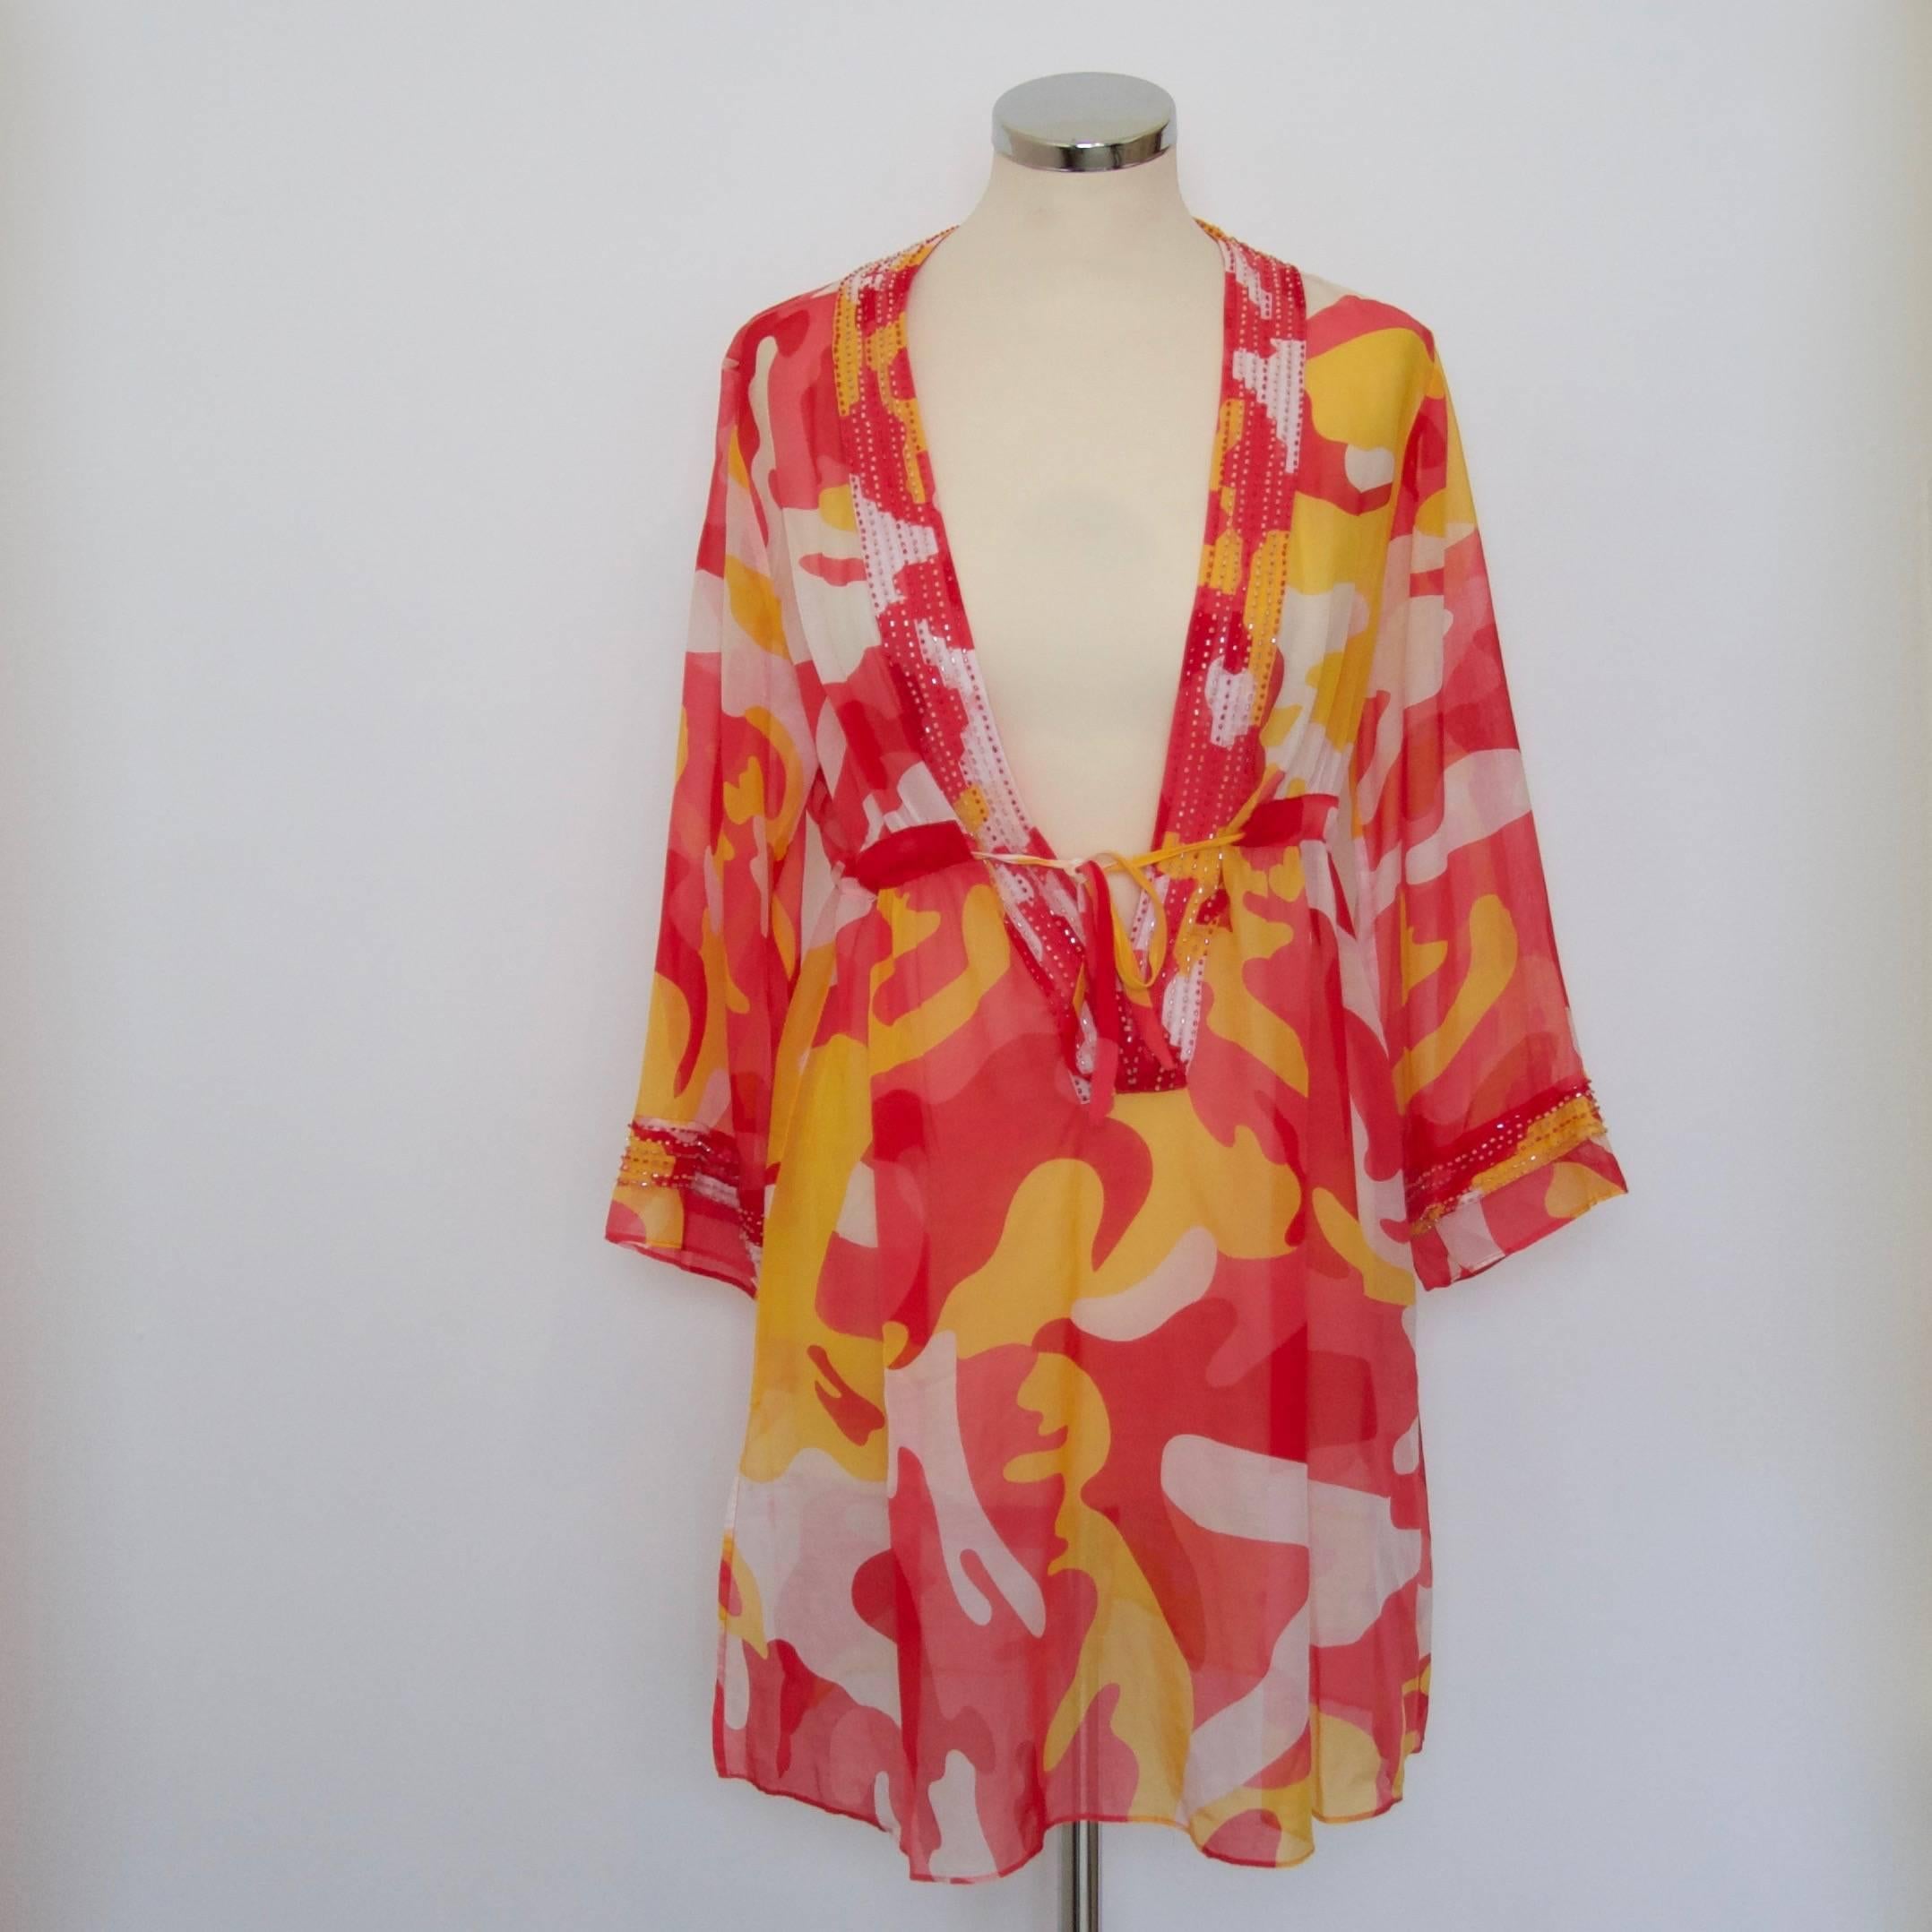 Women's Diane Von Furstenberg Andy Warhol print dress